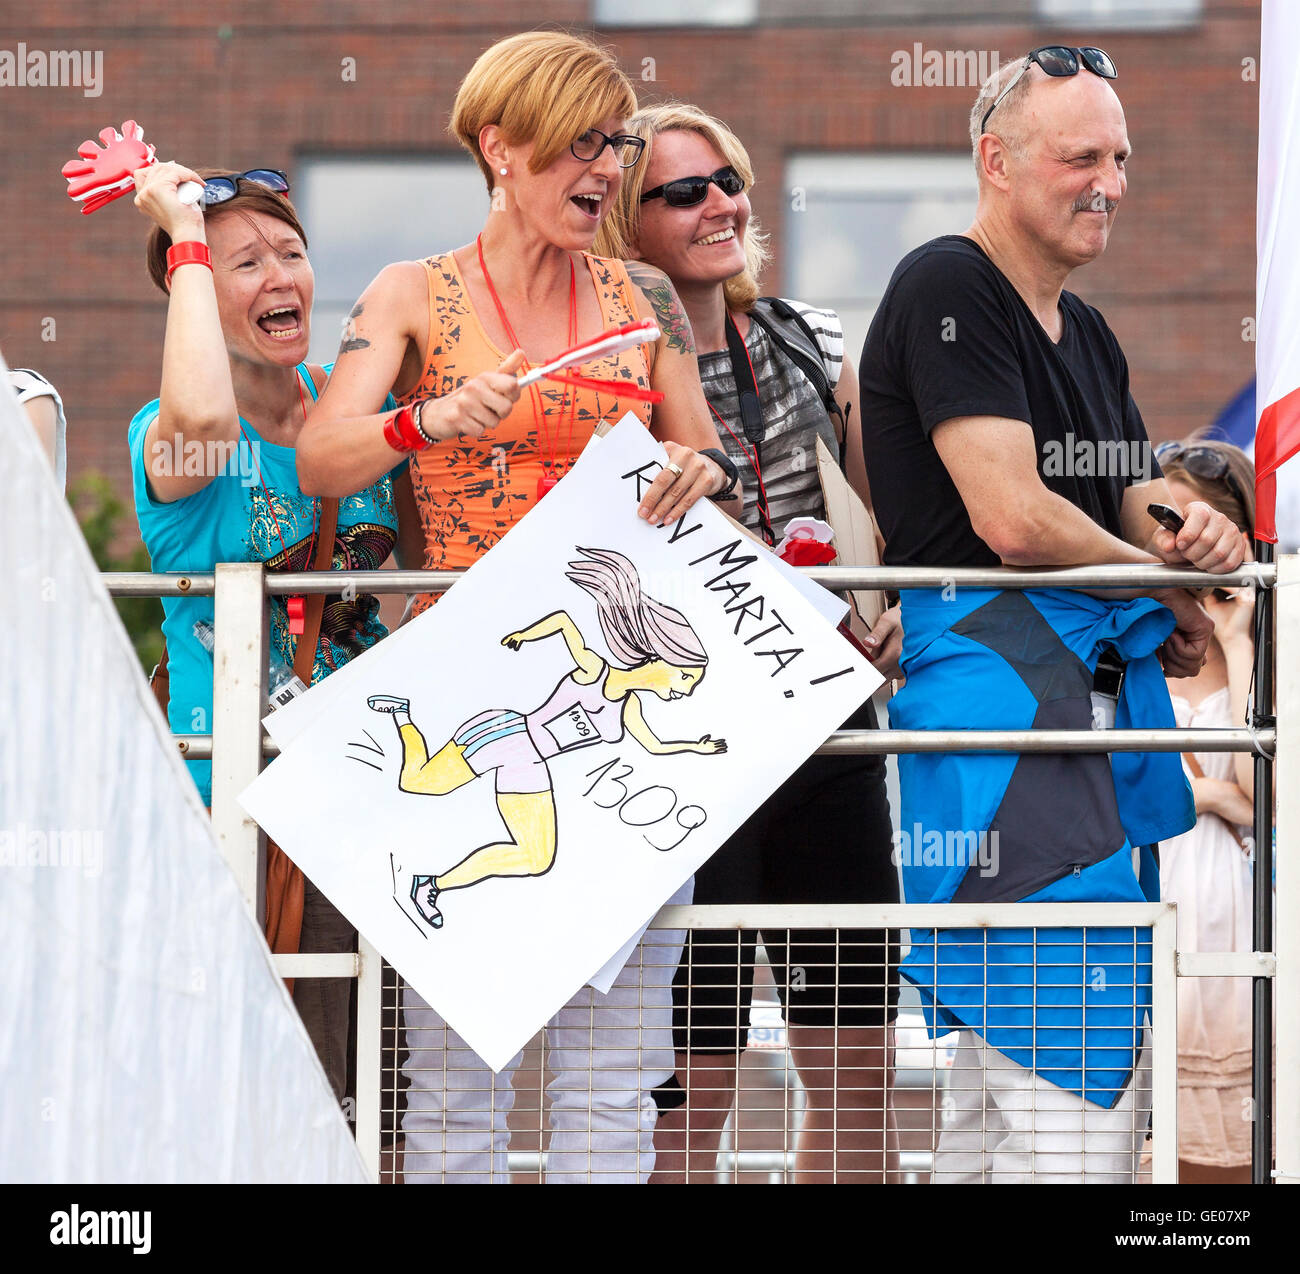 SZCZECIN, POLOGNE - Juillet 06, 2014 : Fans et supporters lors premier triathlon Szczecin Course. Banque D'Images